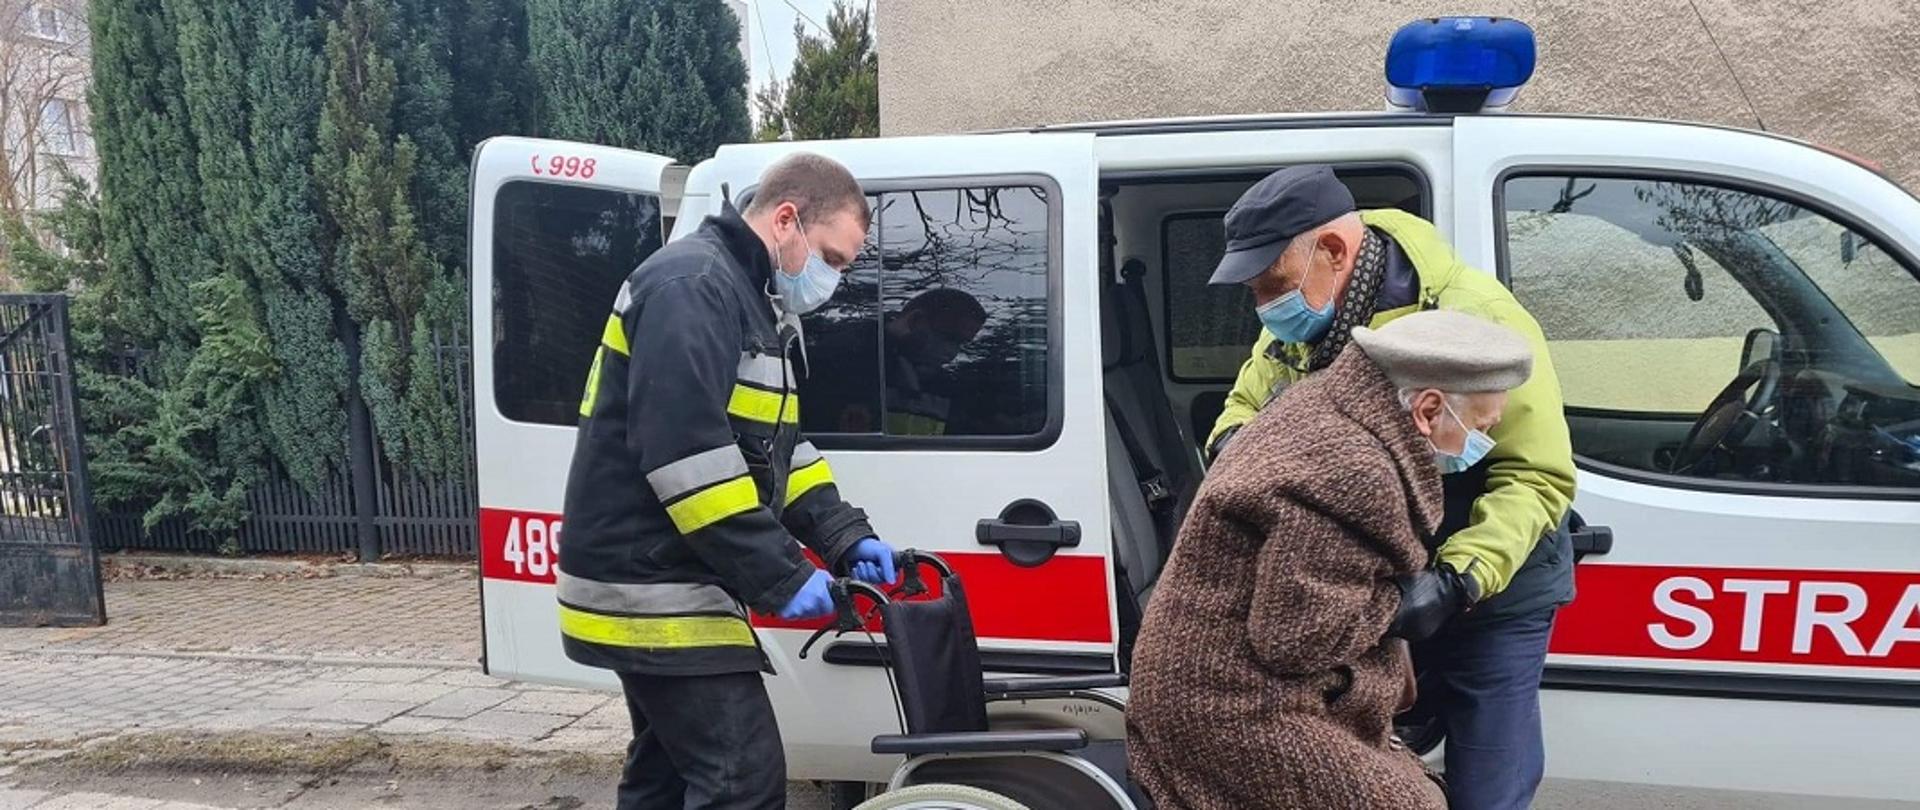 Na zdjęciu widać strażaka oraz mężczyznę pomagających zejść z wózka i wsiąść do samochodu kwatermistrzowskiego ochotniczej straży pożarnej. Kobieta i mężczyzna są spokrewnieni. W tle widać samochód kwatermistrzowski z OSP Skarżysko.